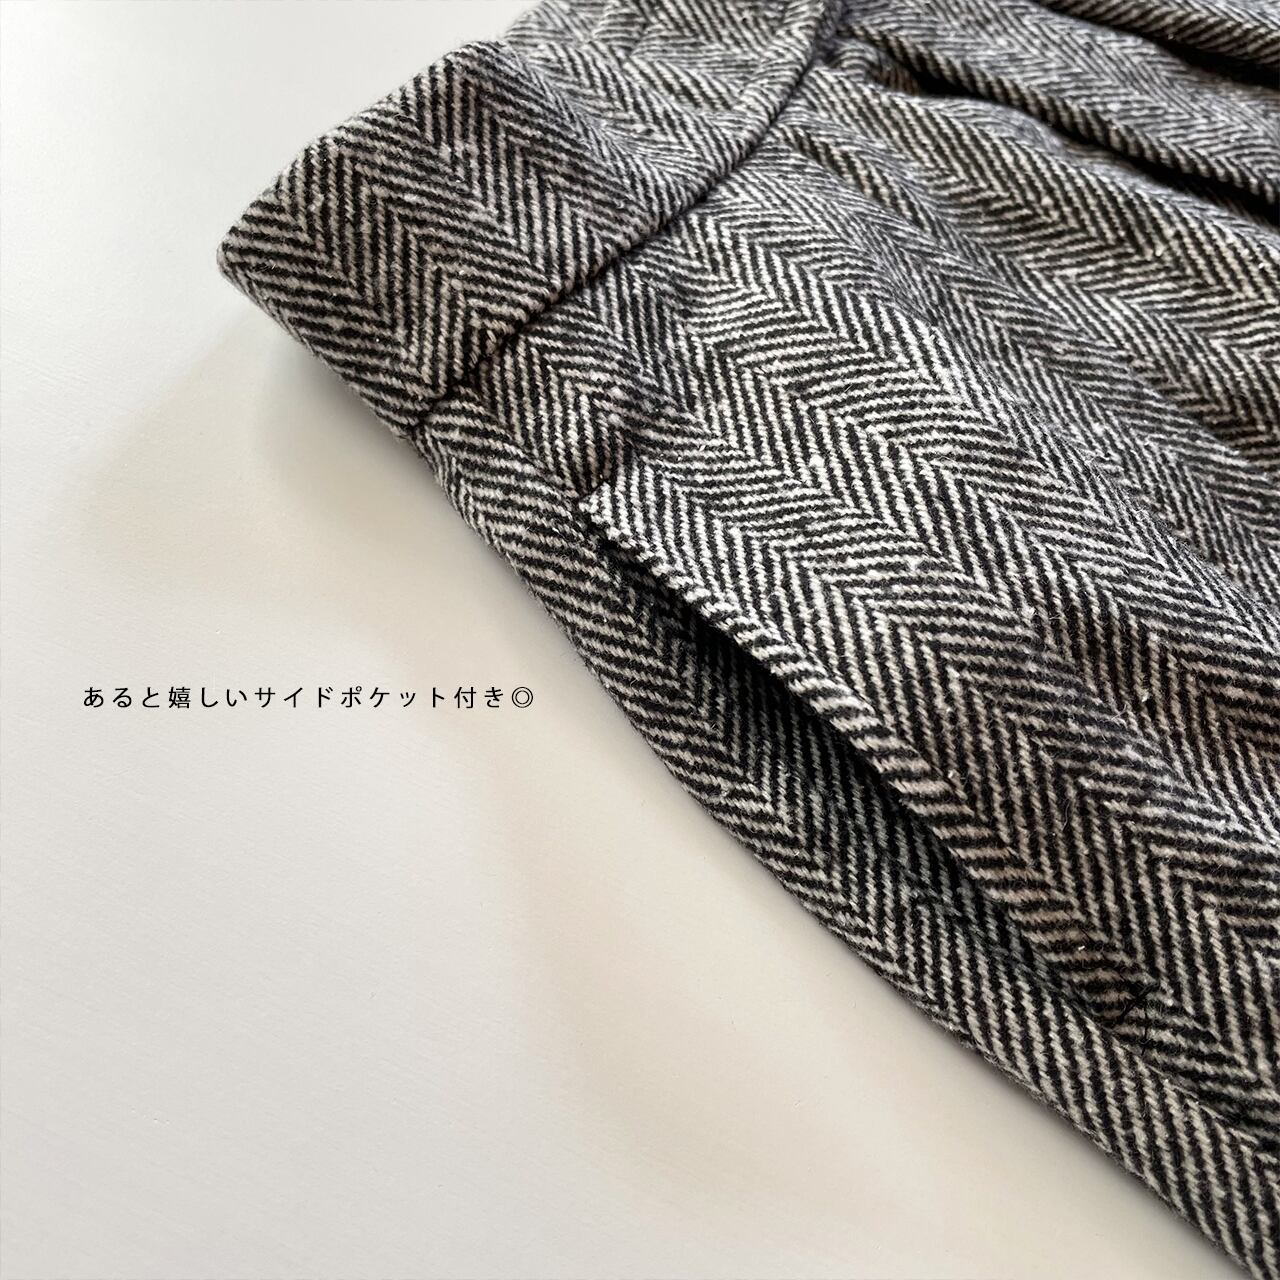 Tweed velcro pants (charcoal)